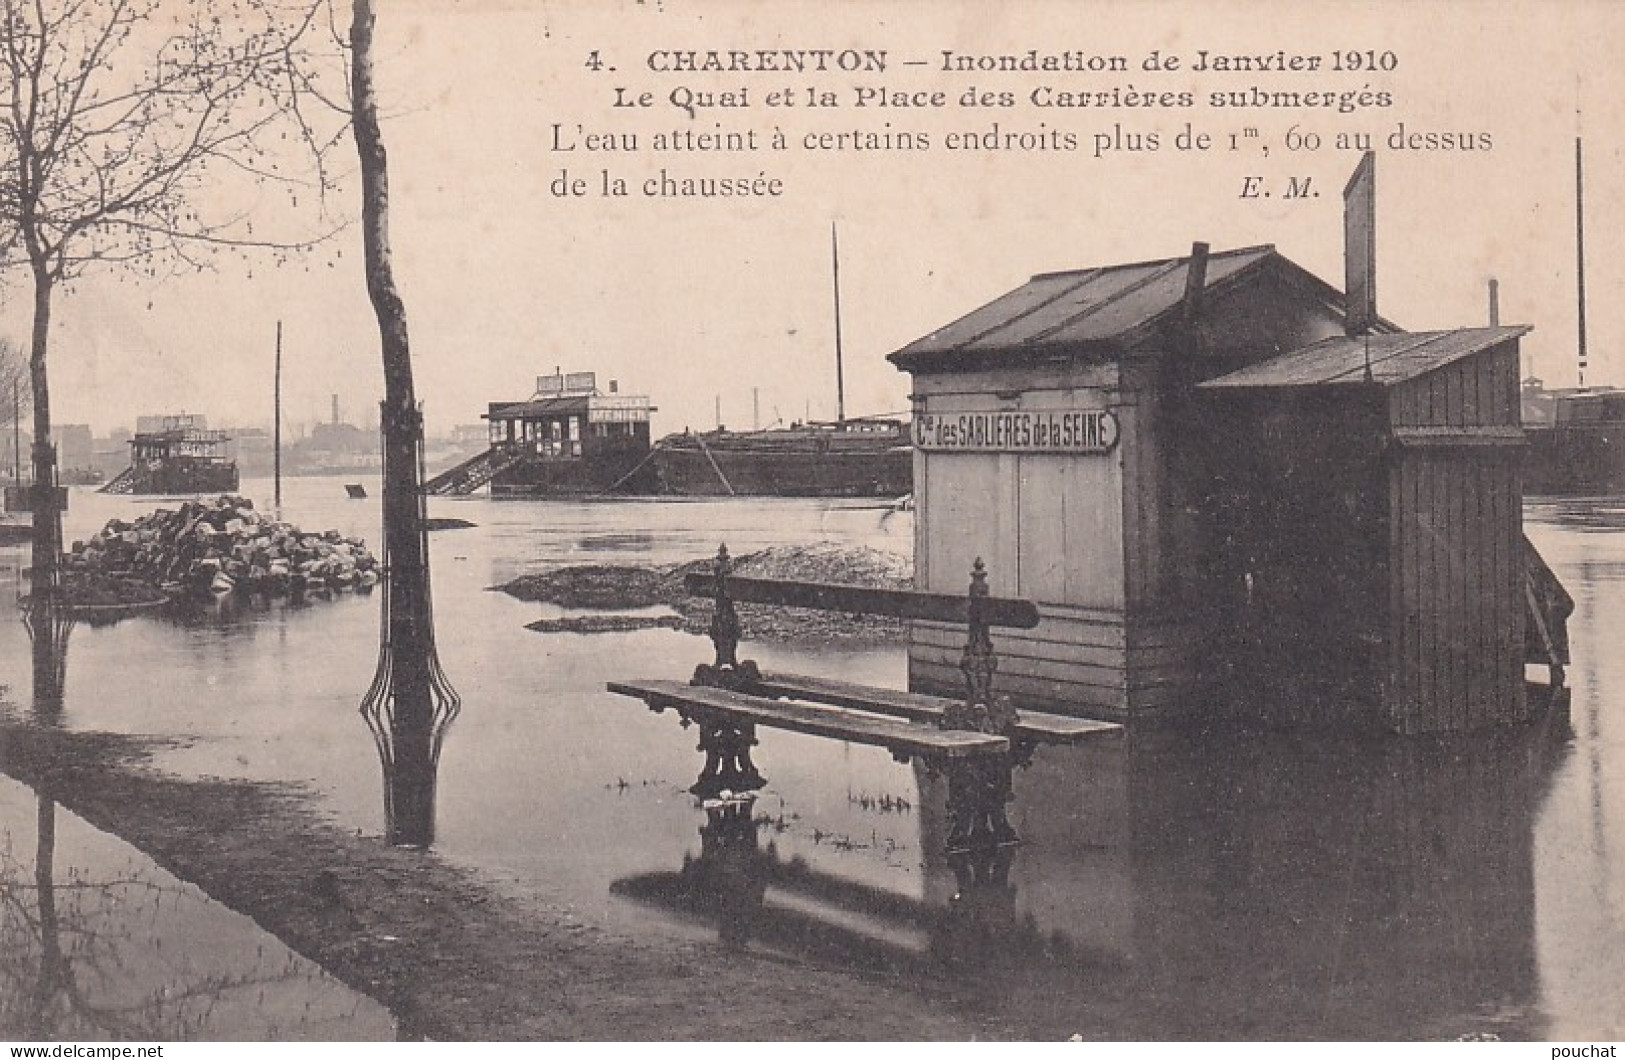 AA+ 122-(94) CHARENTON - INONDATION DE JANVIER 1910 - LE QUAI ET LA PLACE DES CARRIERES SUBMERGES - Charenton Le Pont